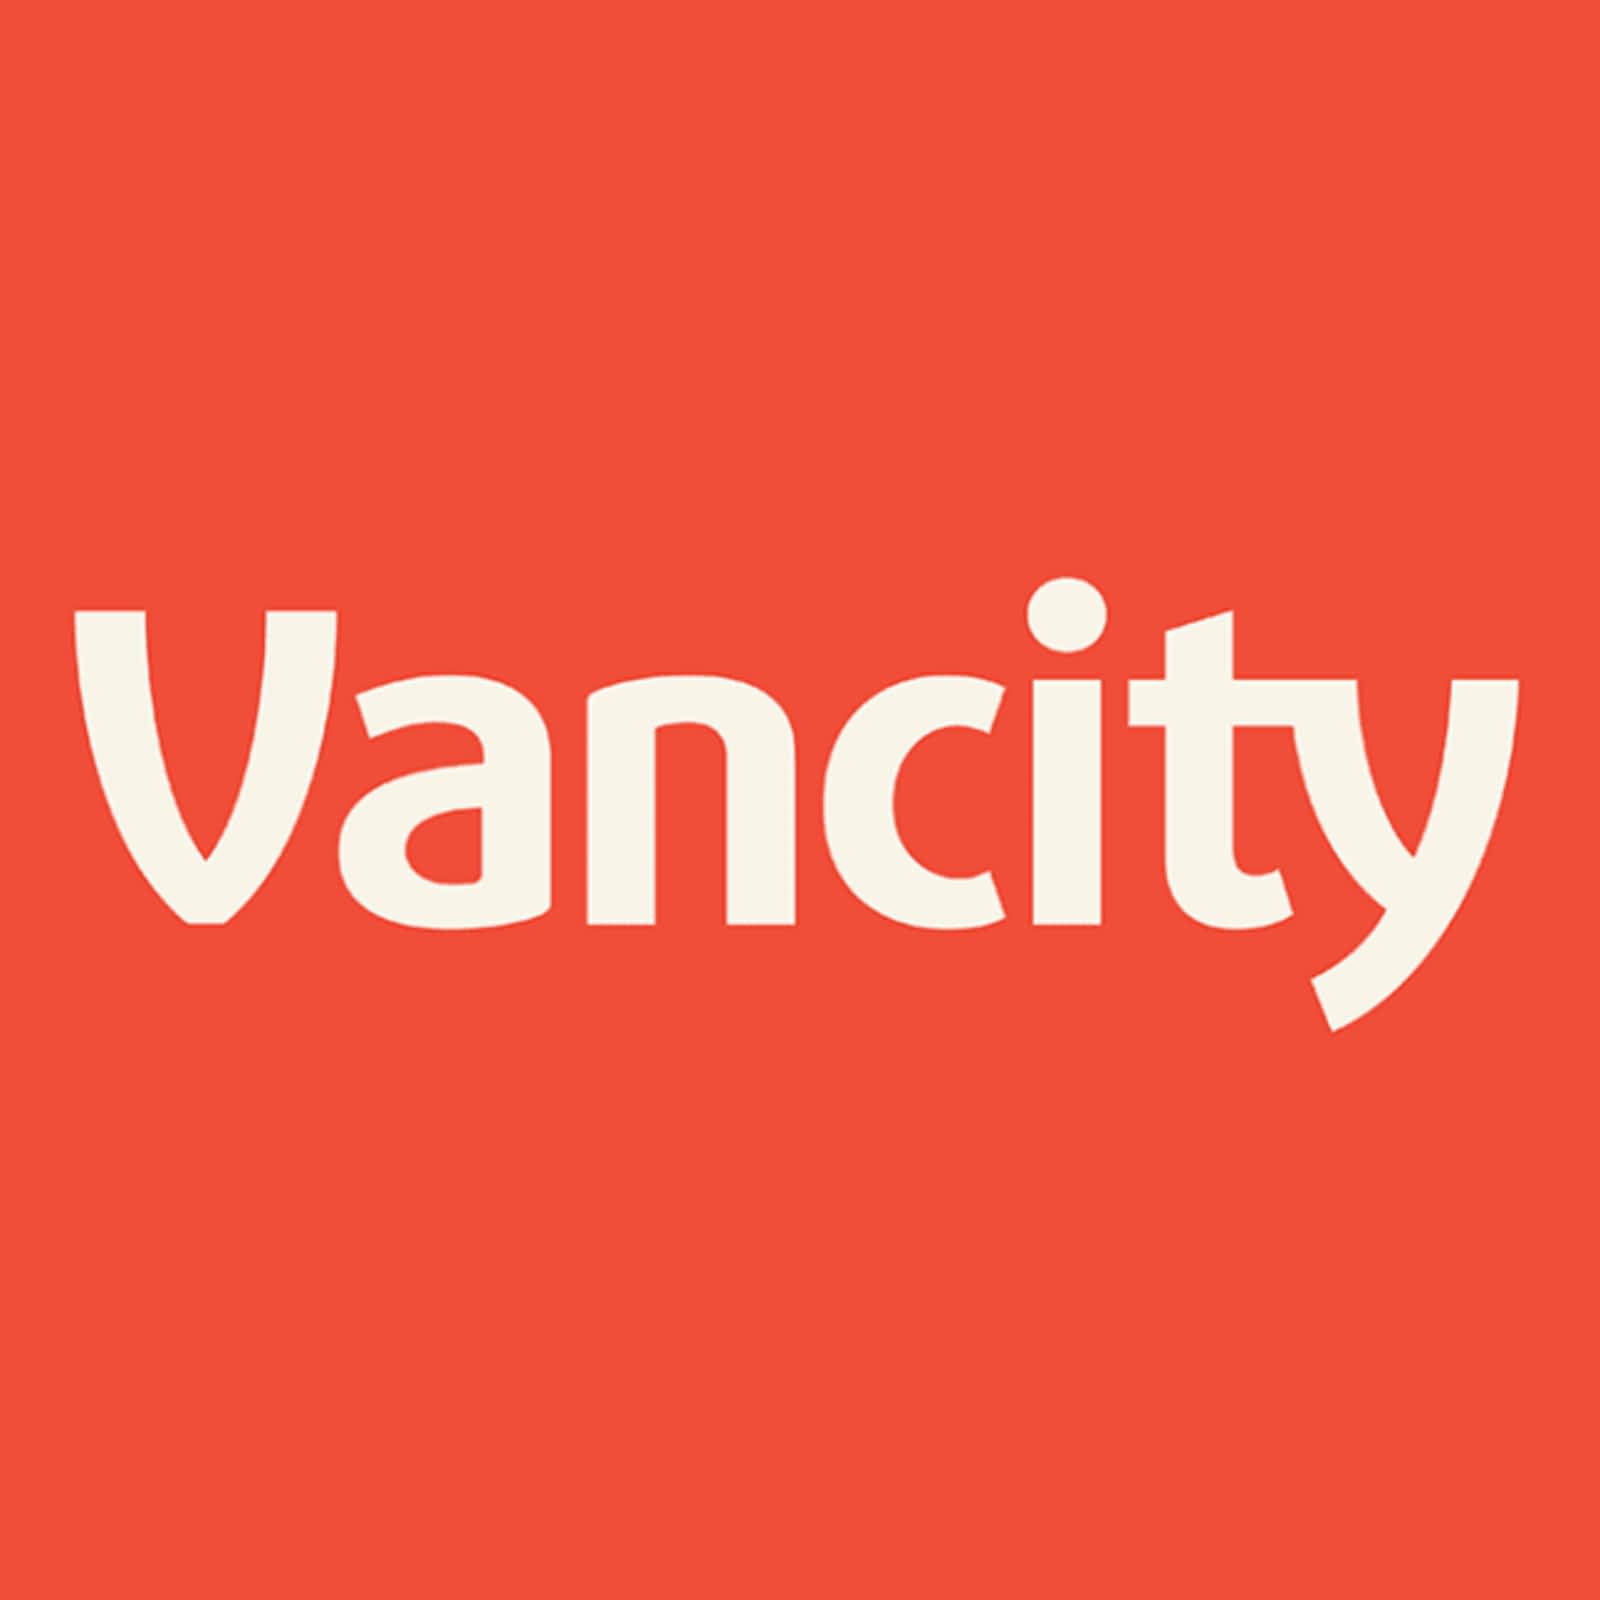 Vancity - ATM